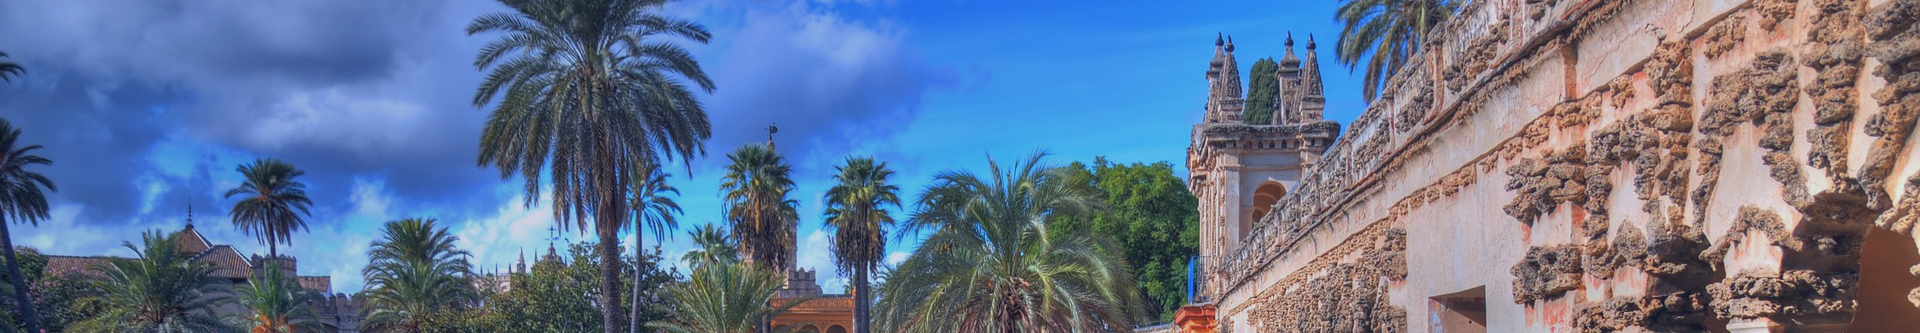 Sky viewed from garden at Alcaza de Sevilla